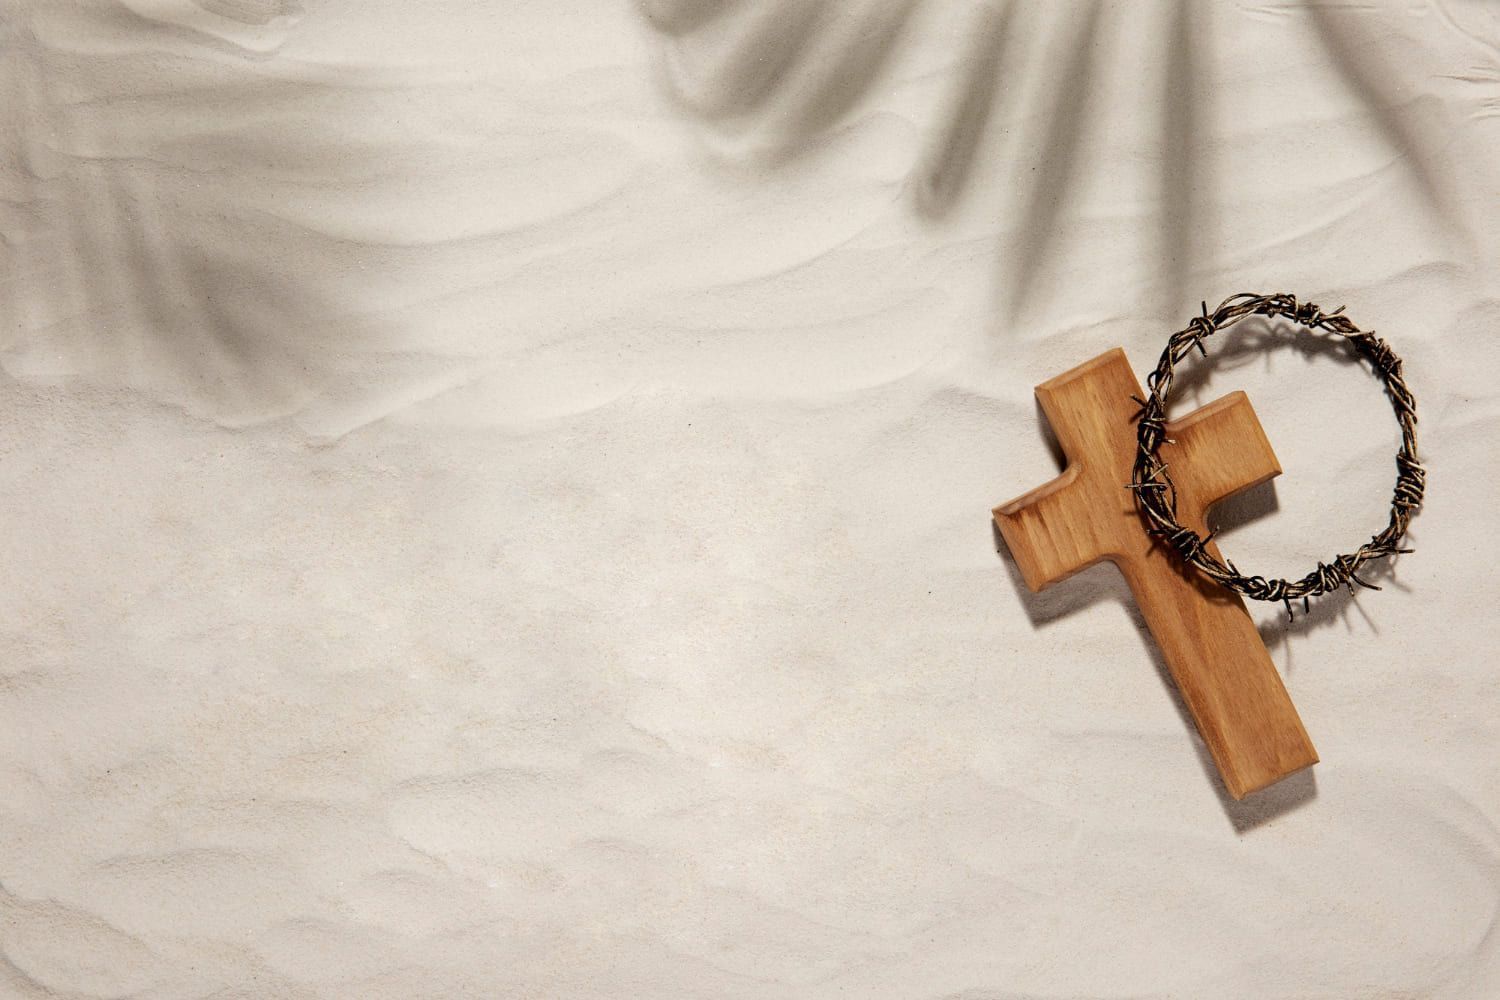 Páscoa Cristã: significado para os evangélicos e católicos - Significados